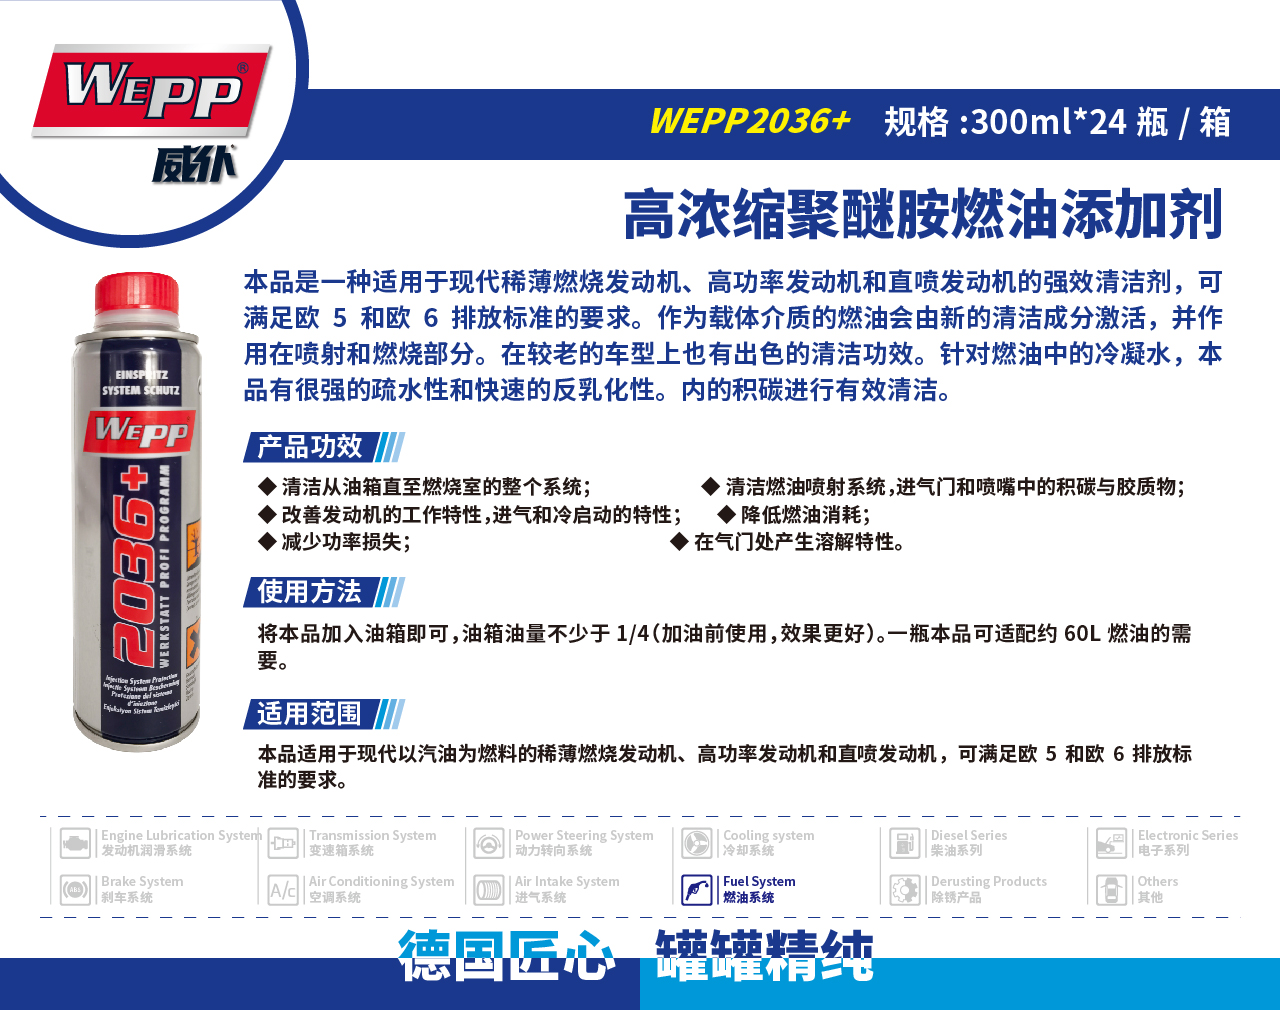 WEPP2036+ 高浓缩聚醚胺燃油添加剂 (图1)